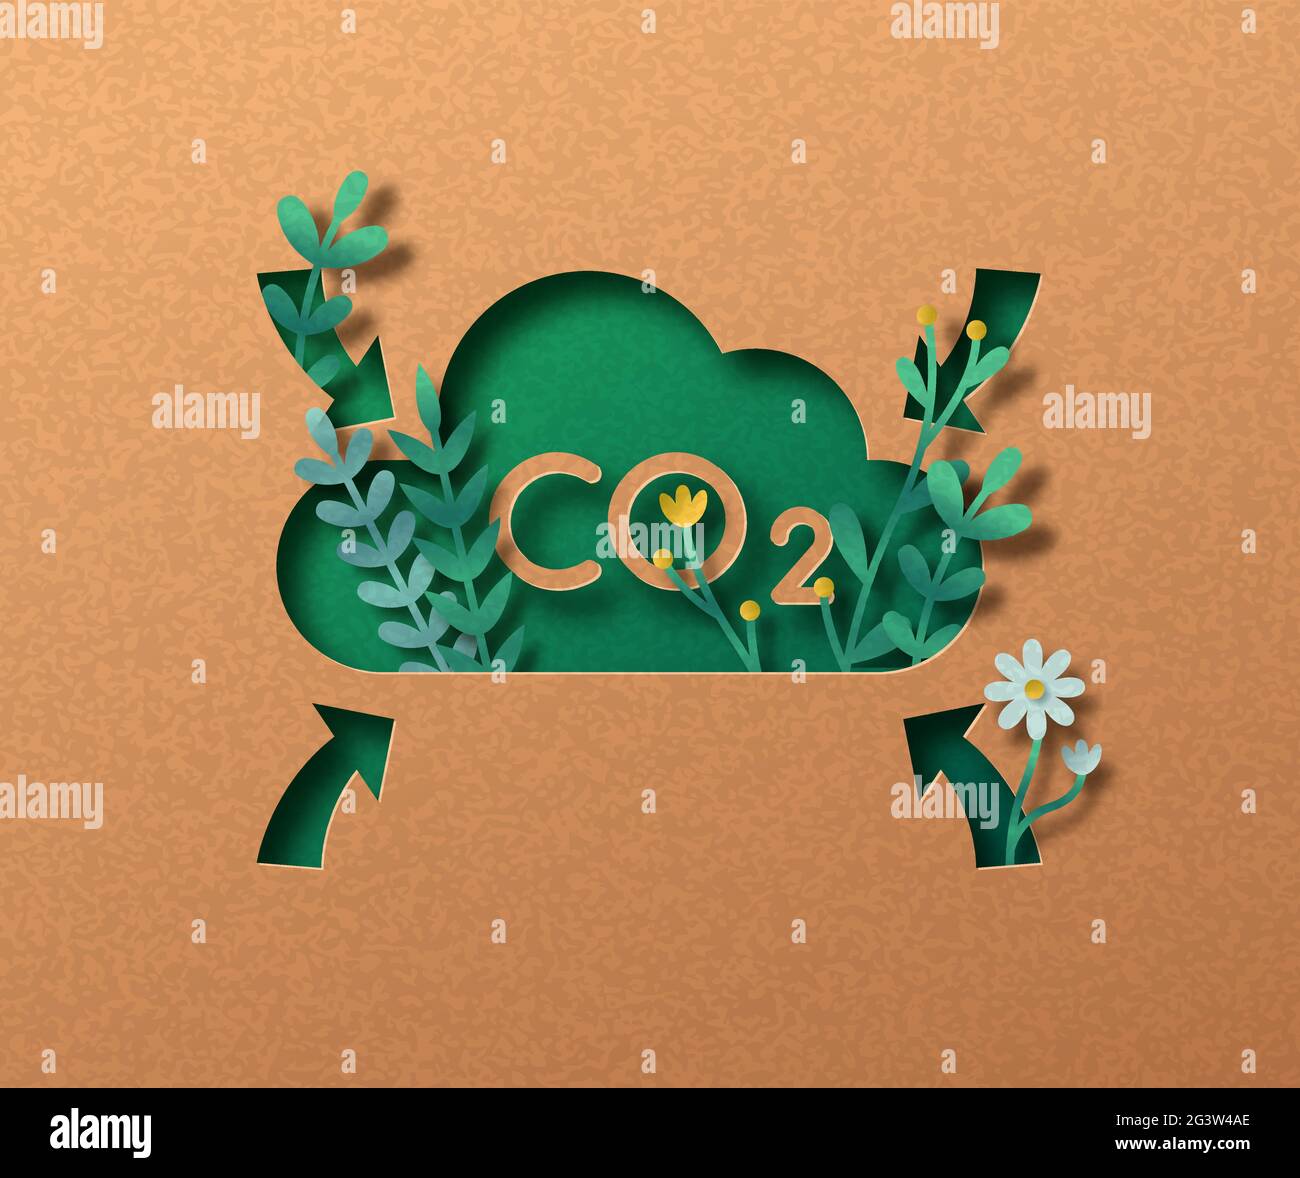 Concept d'illustration de la réduction des émissions de CO2 dans l'air. Signe vert écologique de dioxyde de carbone dans le style artisanal de coupe de papier 3d avec feuille de plante Illustration de Vecteur